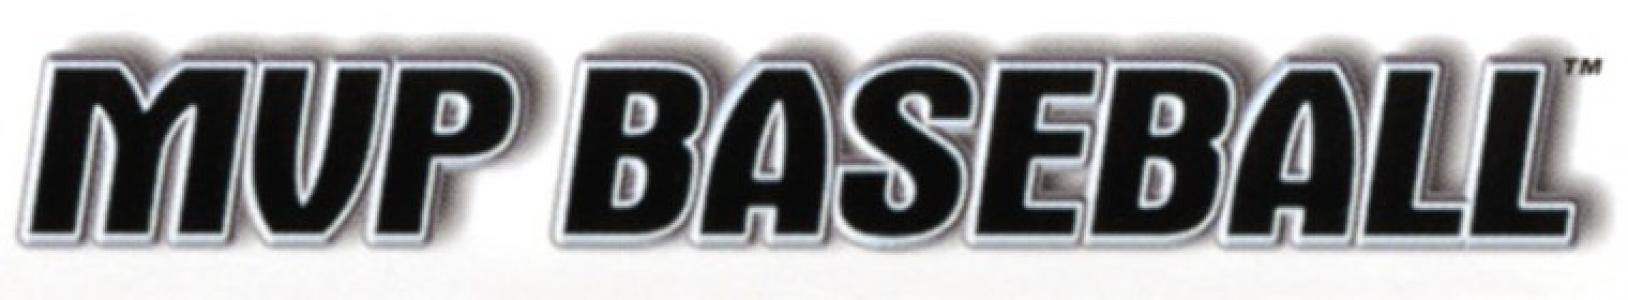 MVP Baseball 2005 banner